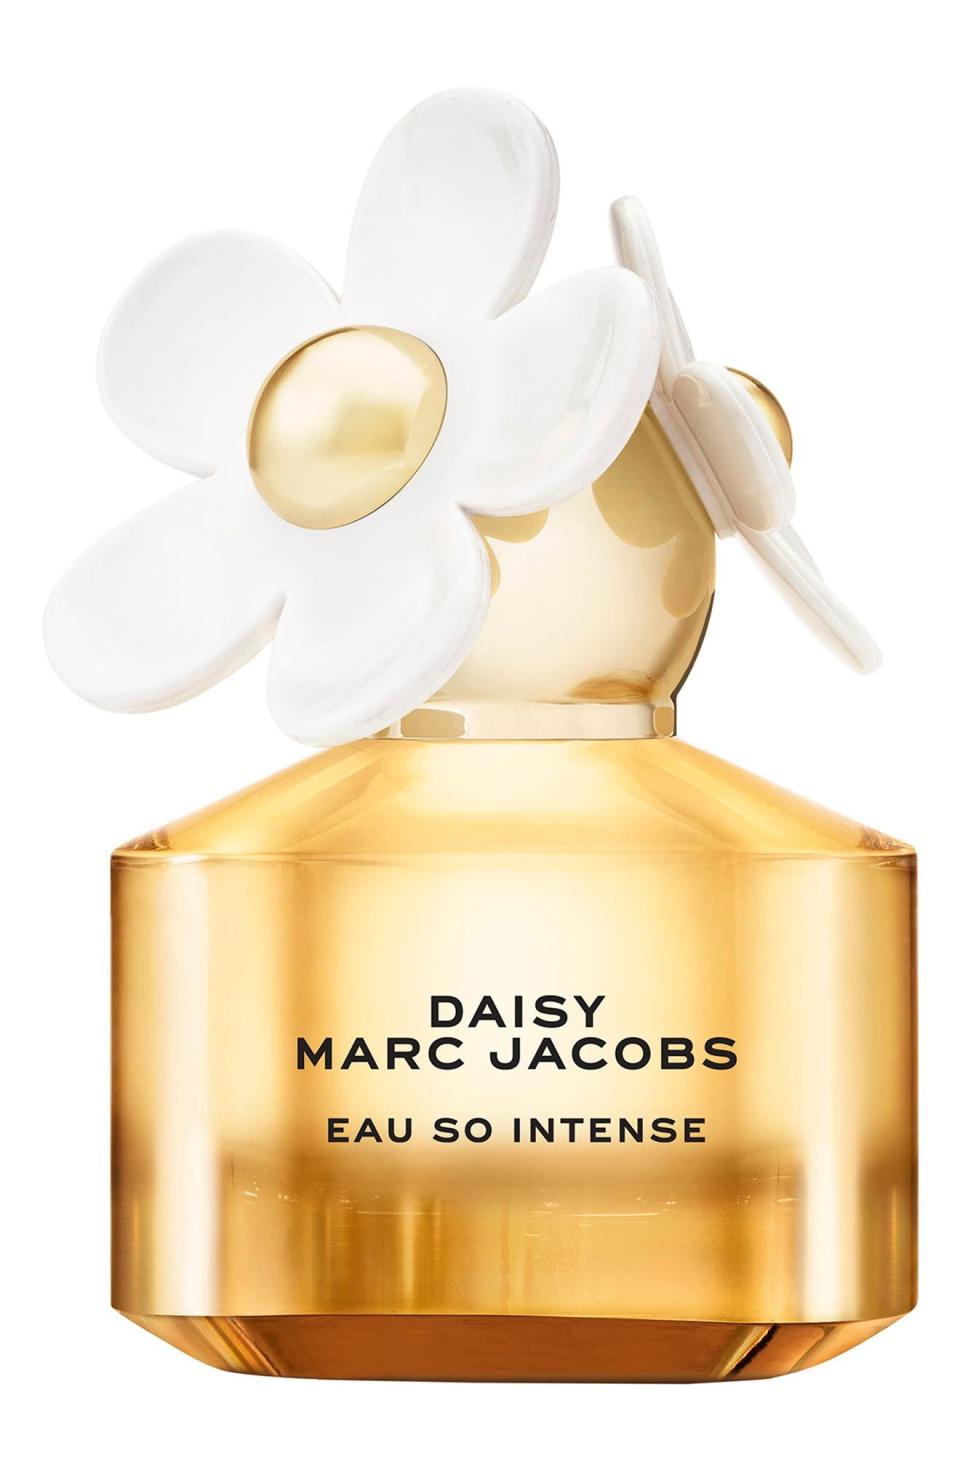 4) Daisy Eau So Intense Eau de Parfum